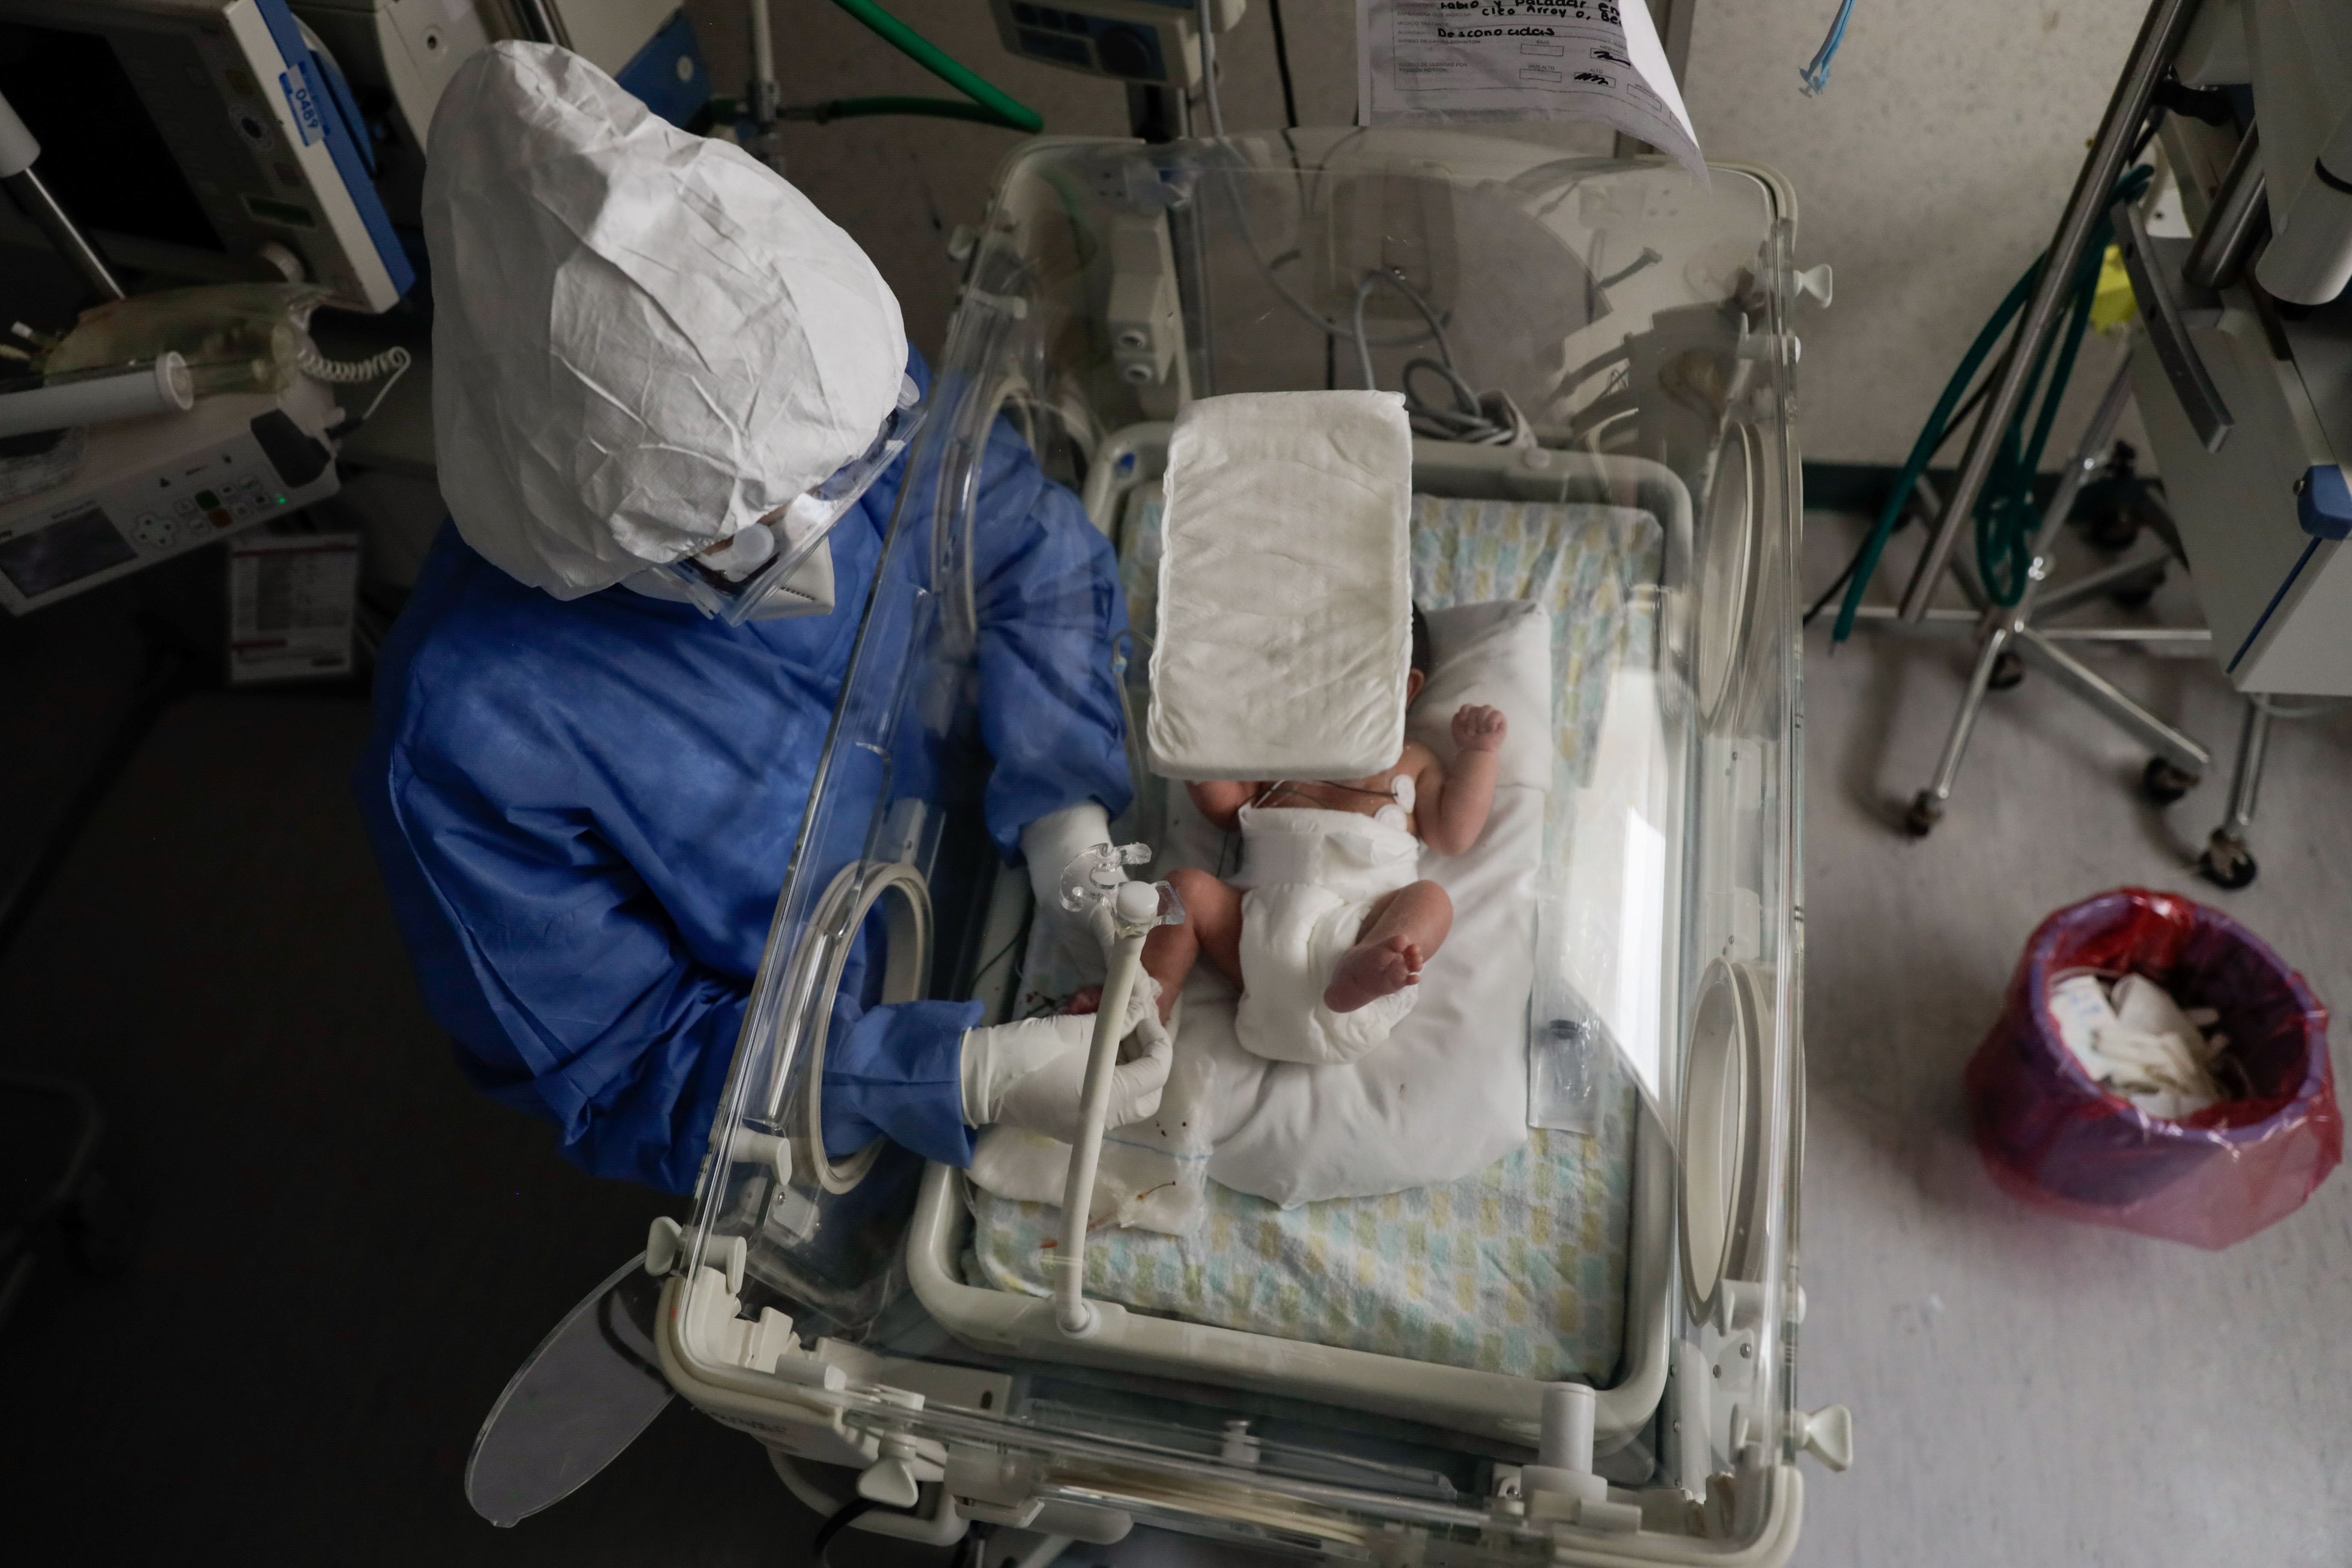 La revisión a un bebé infectado en México (REUTERS/Luis Cortes)